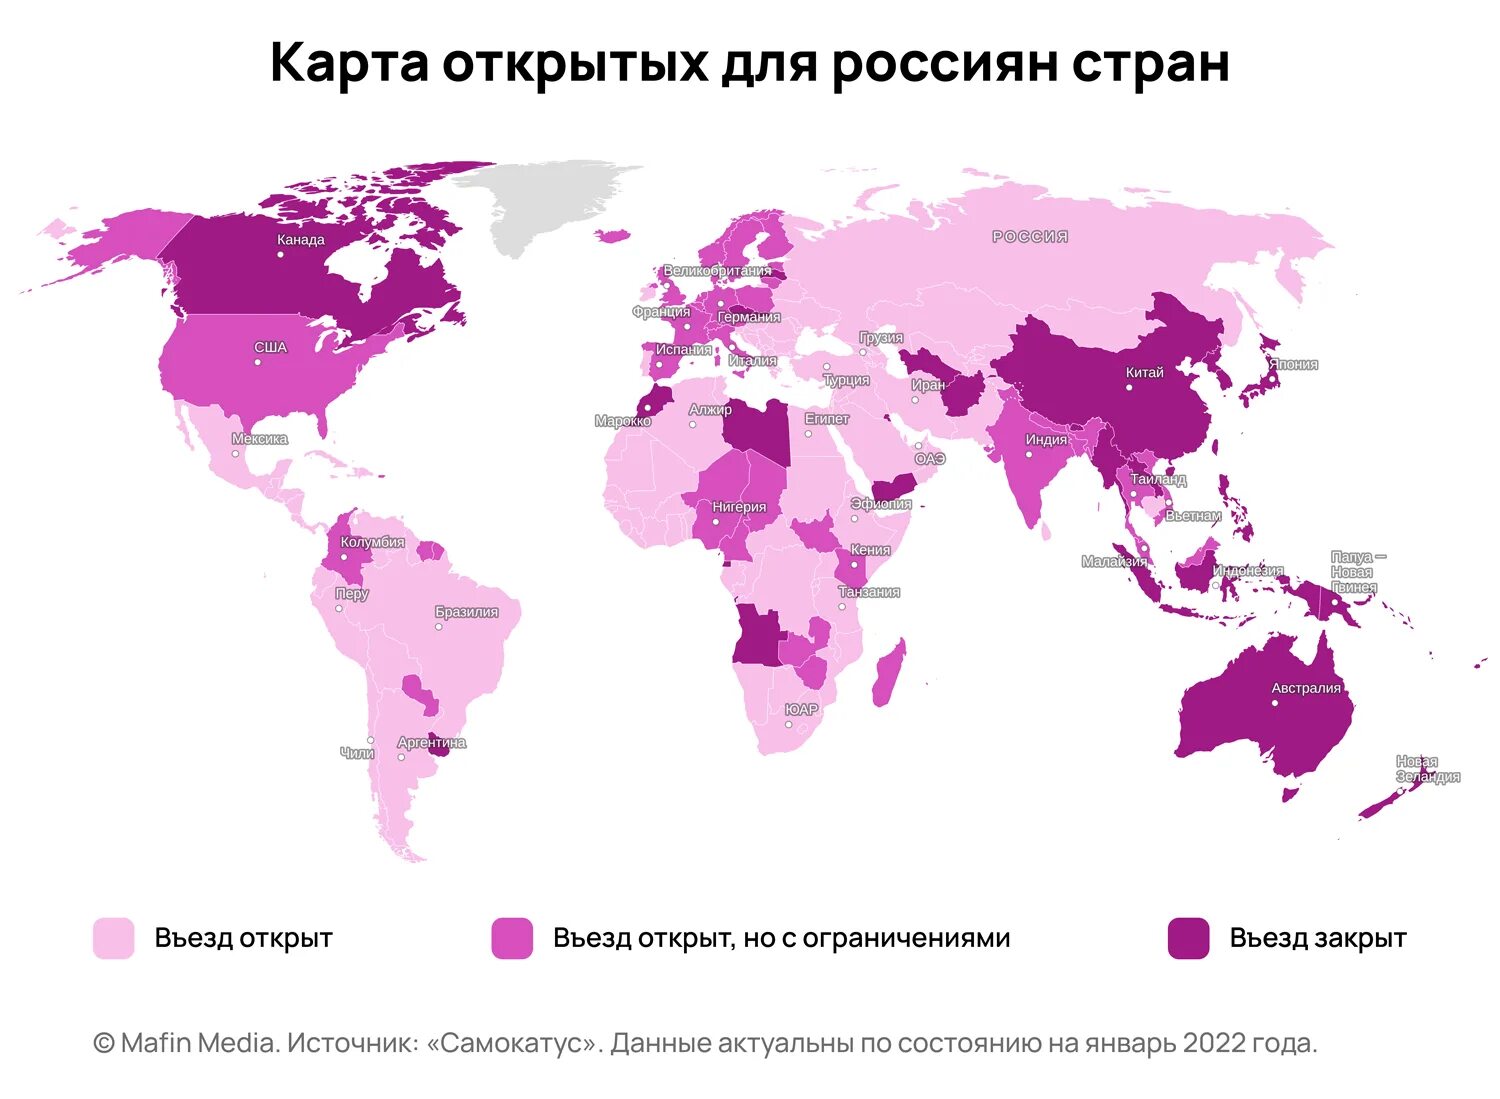 Какие страны открыты для россия сегодня. Карта открытых стран для россиян 2022. Открытые страны для россиян 2022. Какие страны открыты для россиян в 2022. Какие страны сейчас открыты для россиян 2022.